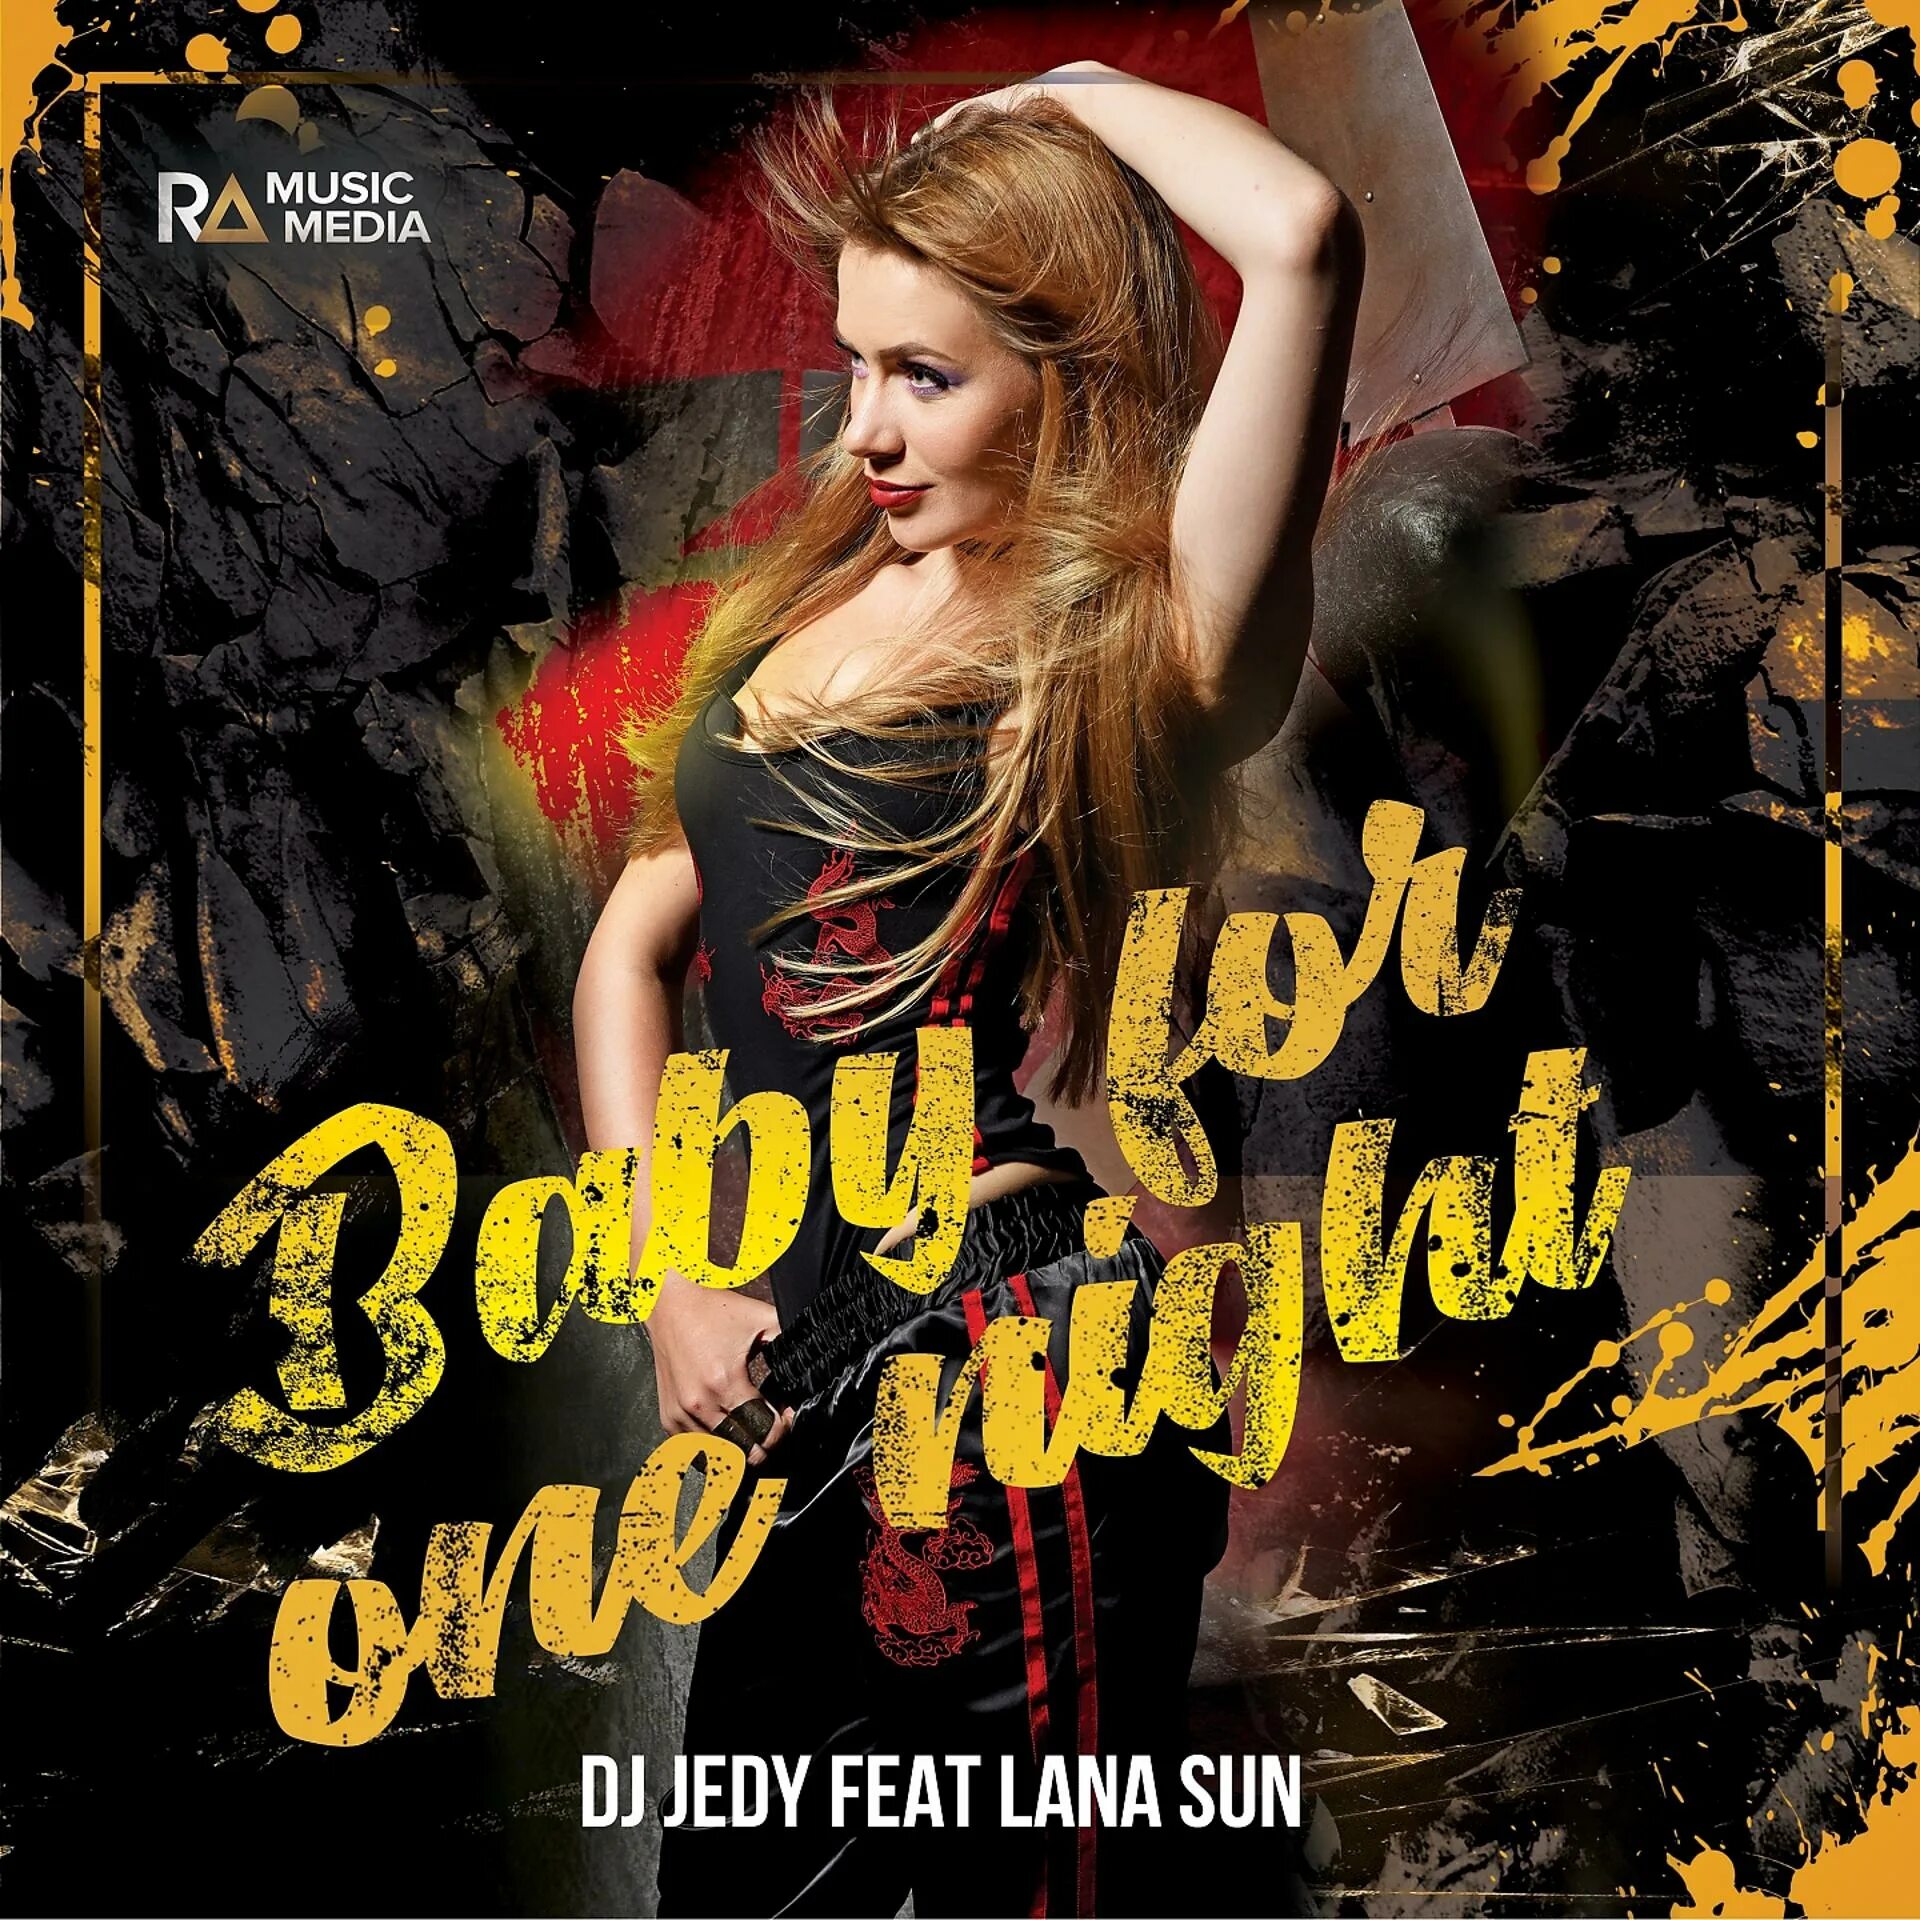 Dj jedy woman in love. DJ JEDY feat. Lana Sun. Baby for one Night DJ JEDY, Lana Sun. DJ JEDY feat. DJ JEDY - 17.